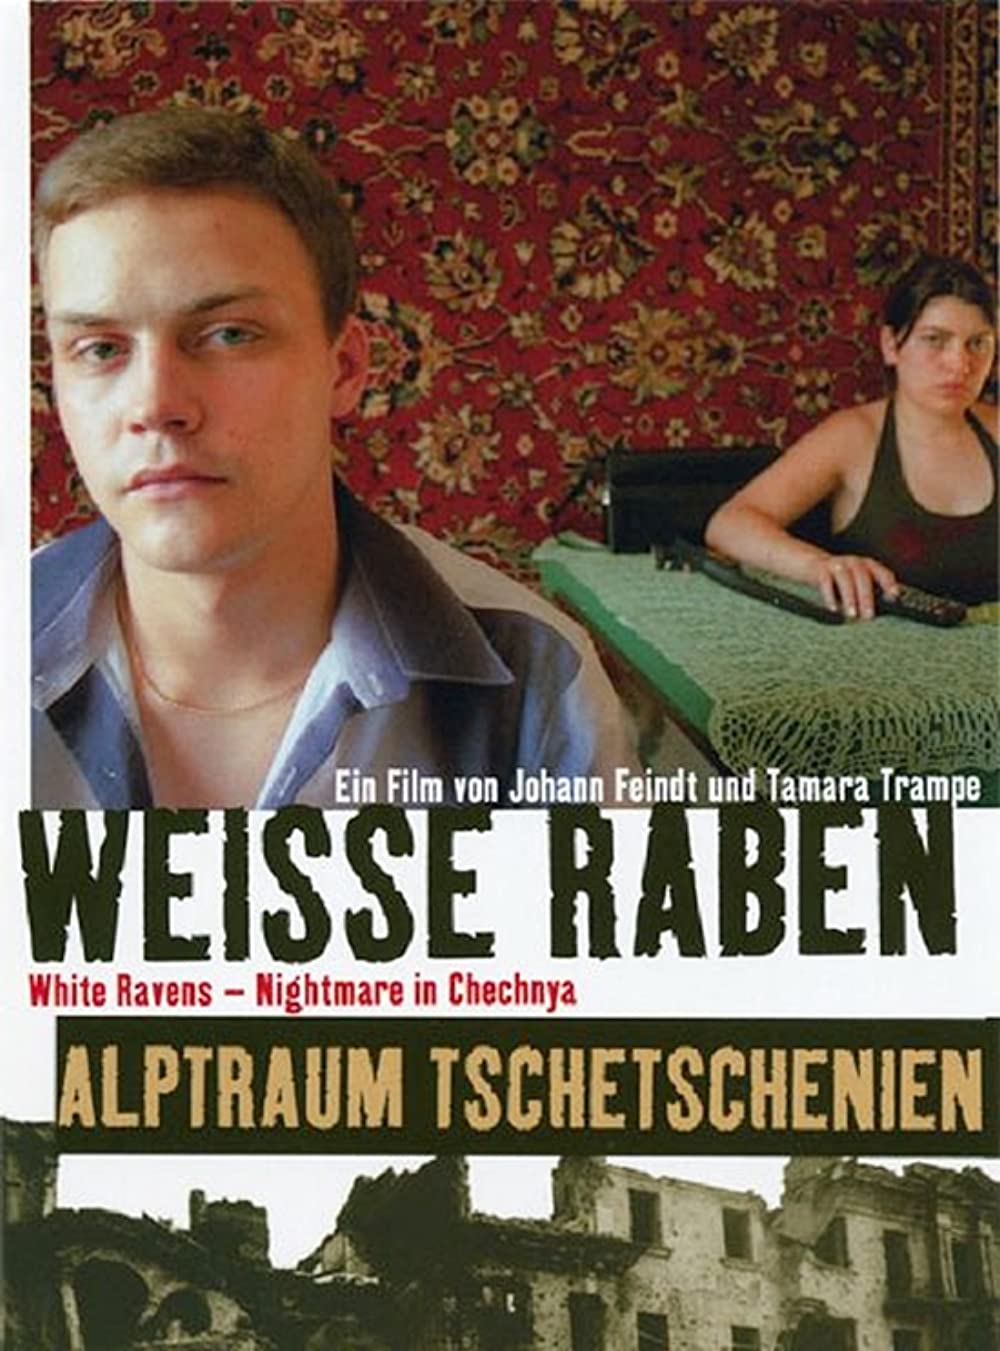 Download Weiße Raben - Alptraum Tschetschenien Movie | Weiße Raben - Alptraum Tschetschenien